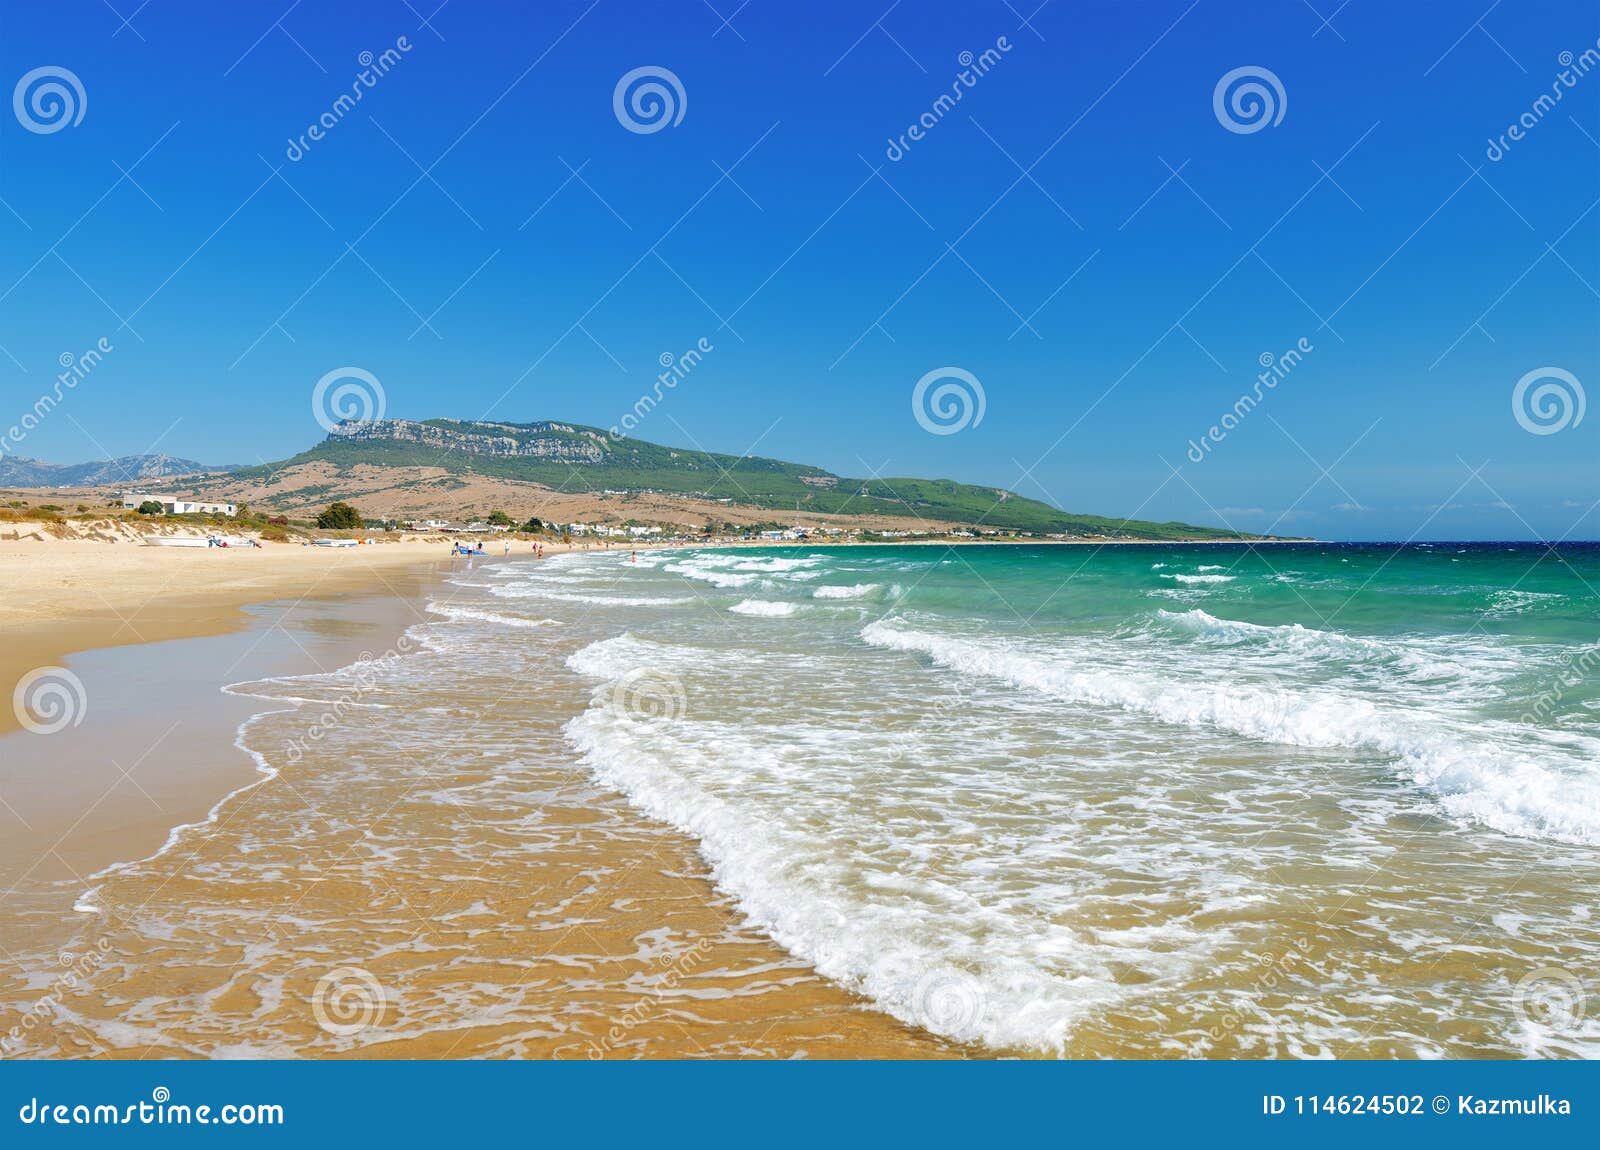 beautiful beach playa de bolonia on the atlantic coast of tarifa.